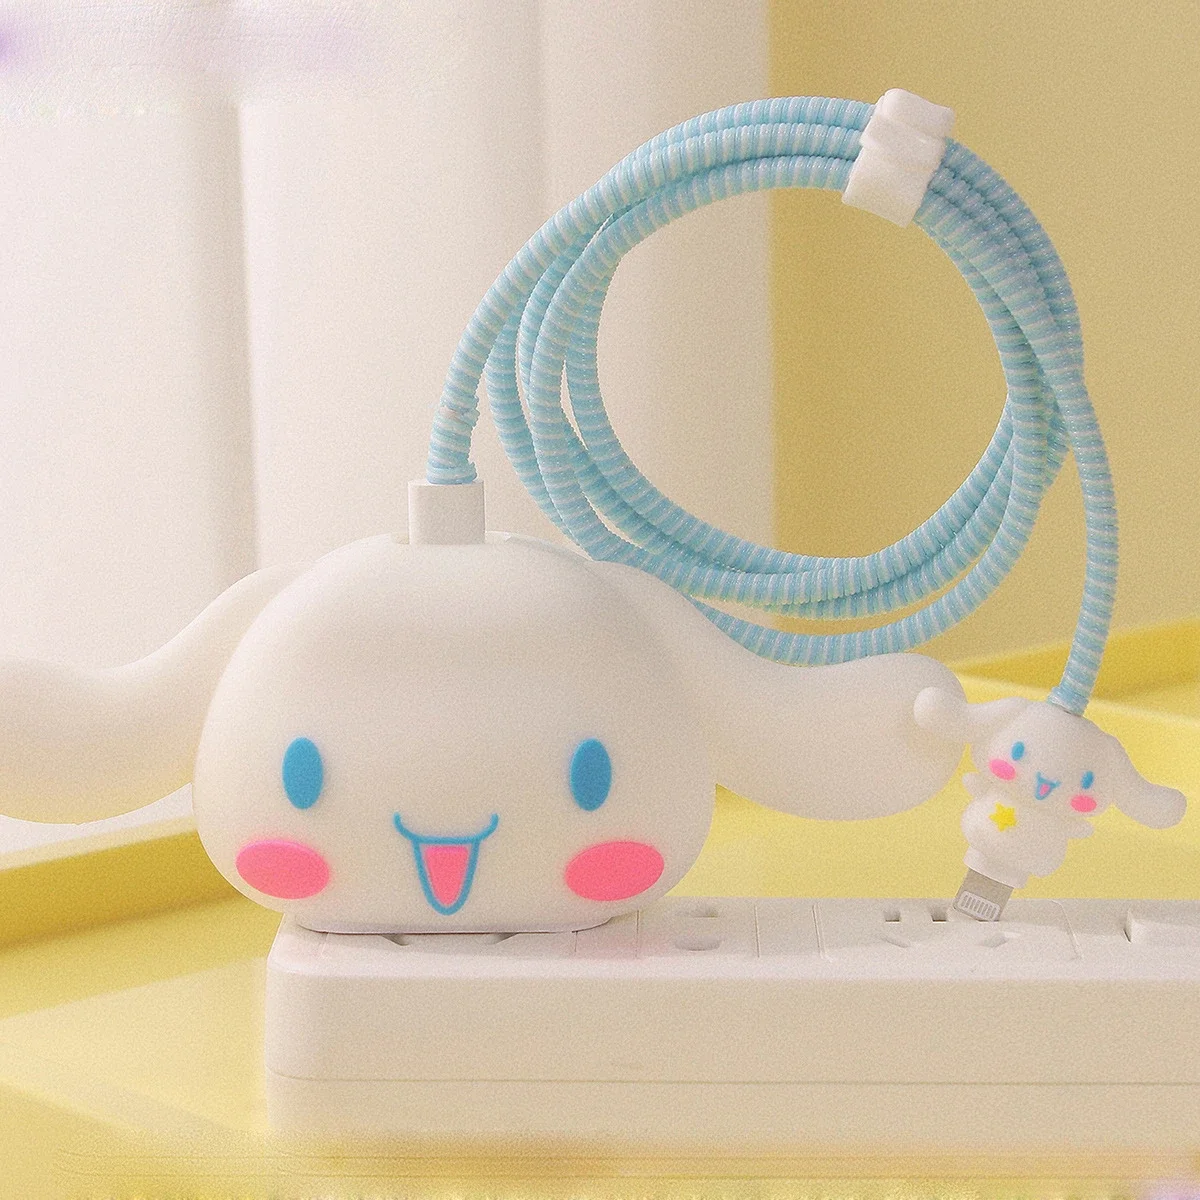 

Аниме Sanrio Hello Kitty Kuromi аксессуары для зарядного устройства защита от укусов кабель для зарядки IPhone защитный чехол подарок